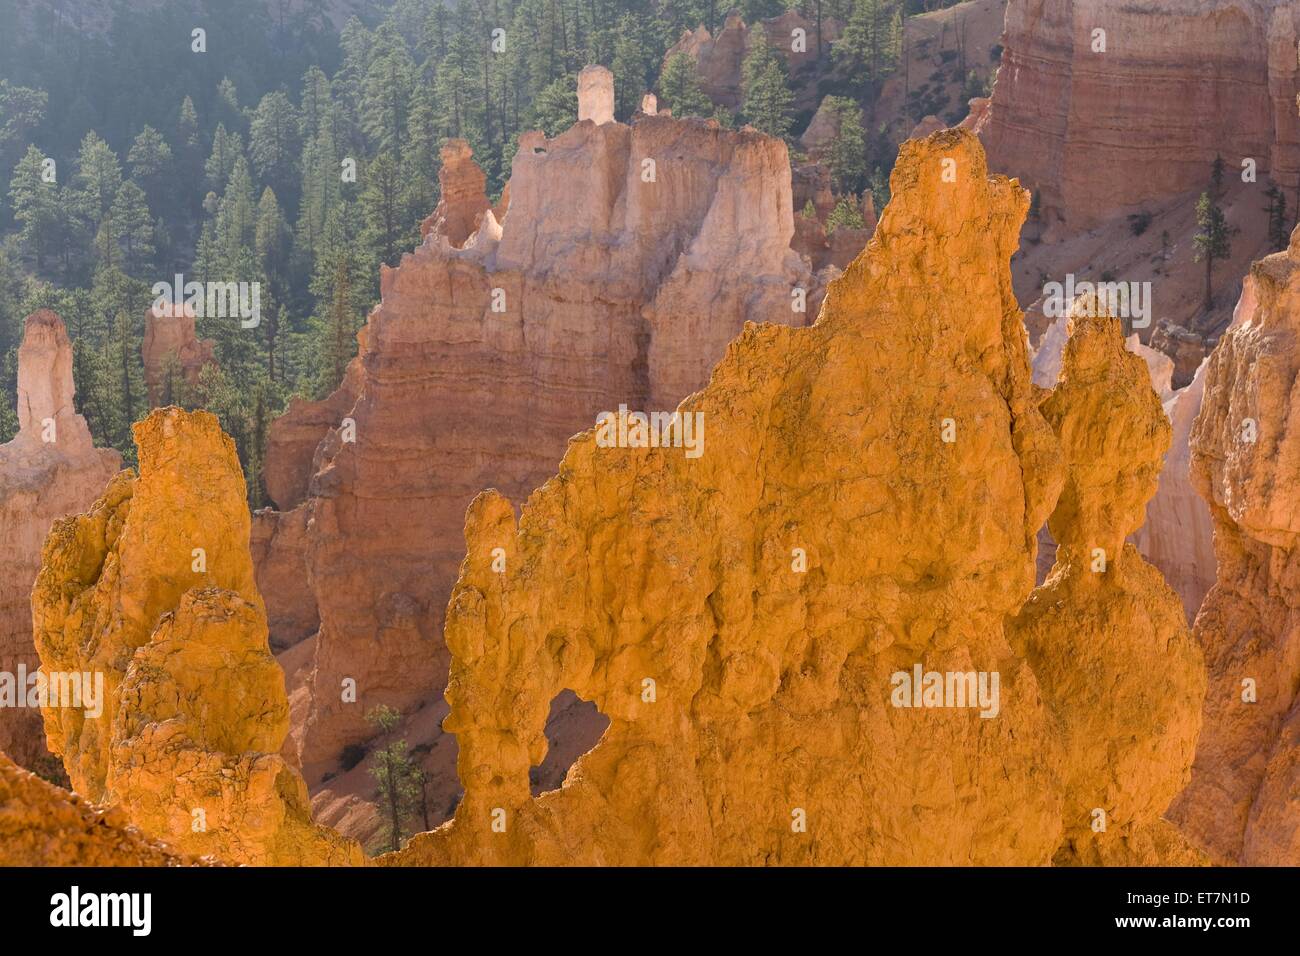 verschiedenfarbige bizarre Erosionsformen mit Felsenfenster im Amphitheater im Morgenlicht, USA, Utah, Bryce Canyon Nationalpark Stock Photo